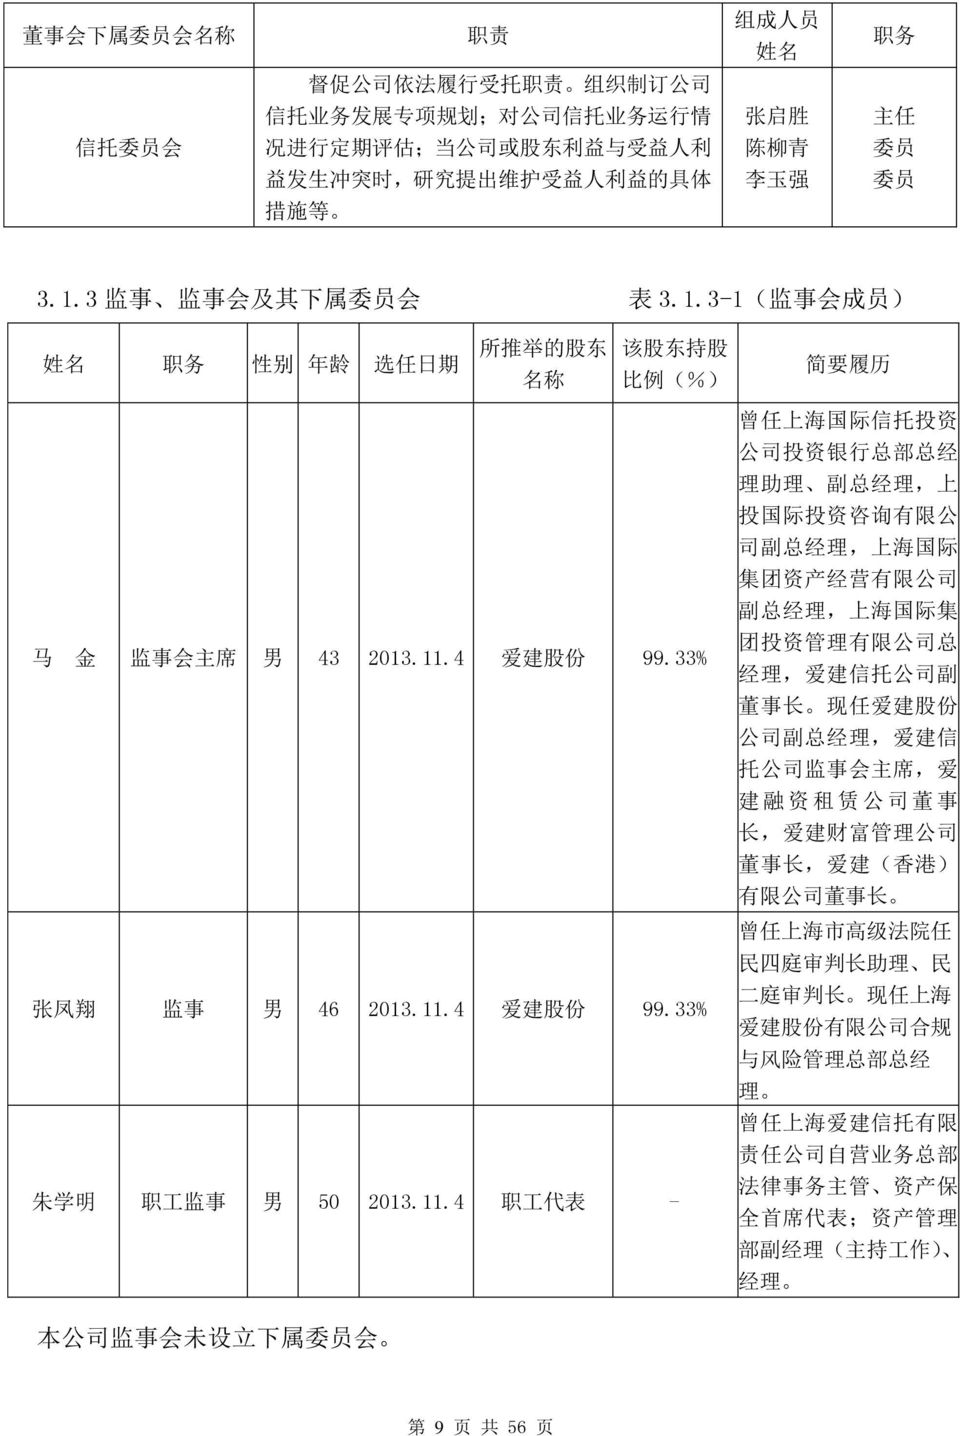 4 爱 建 股 份 99.33% 张 凤 翔 监 事 男 46 2013.11.